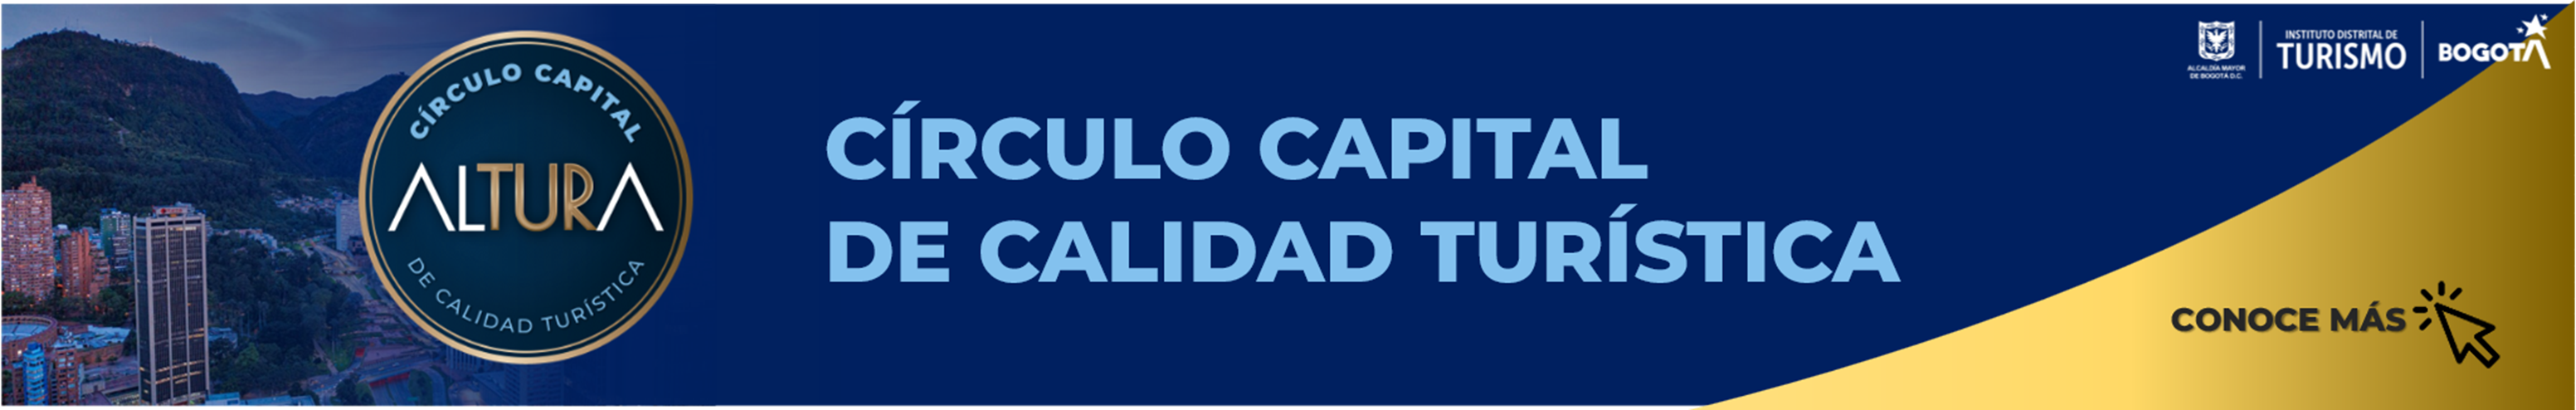 CÍRCULO CAPITAL DE CALIDAD TURÍSTICA